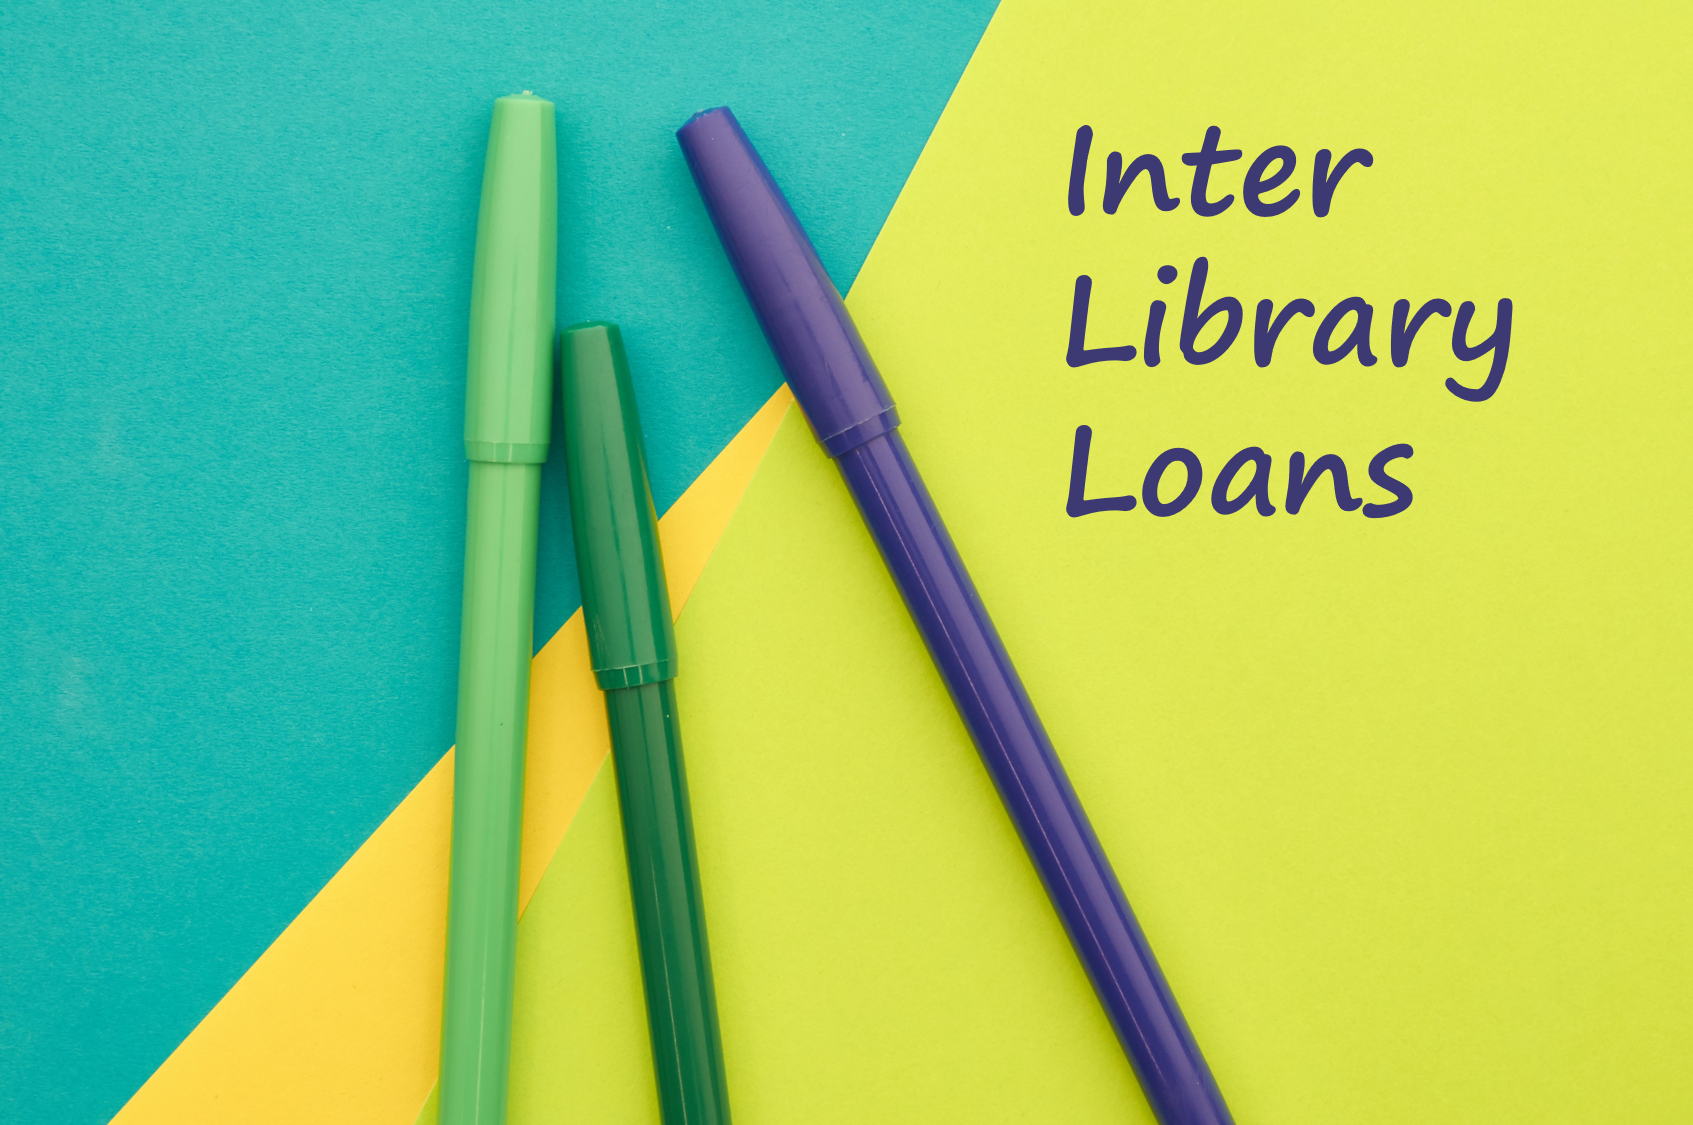 Inter Library Lending